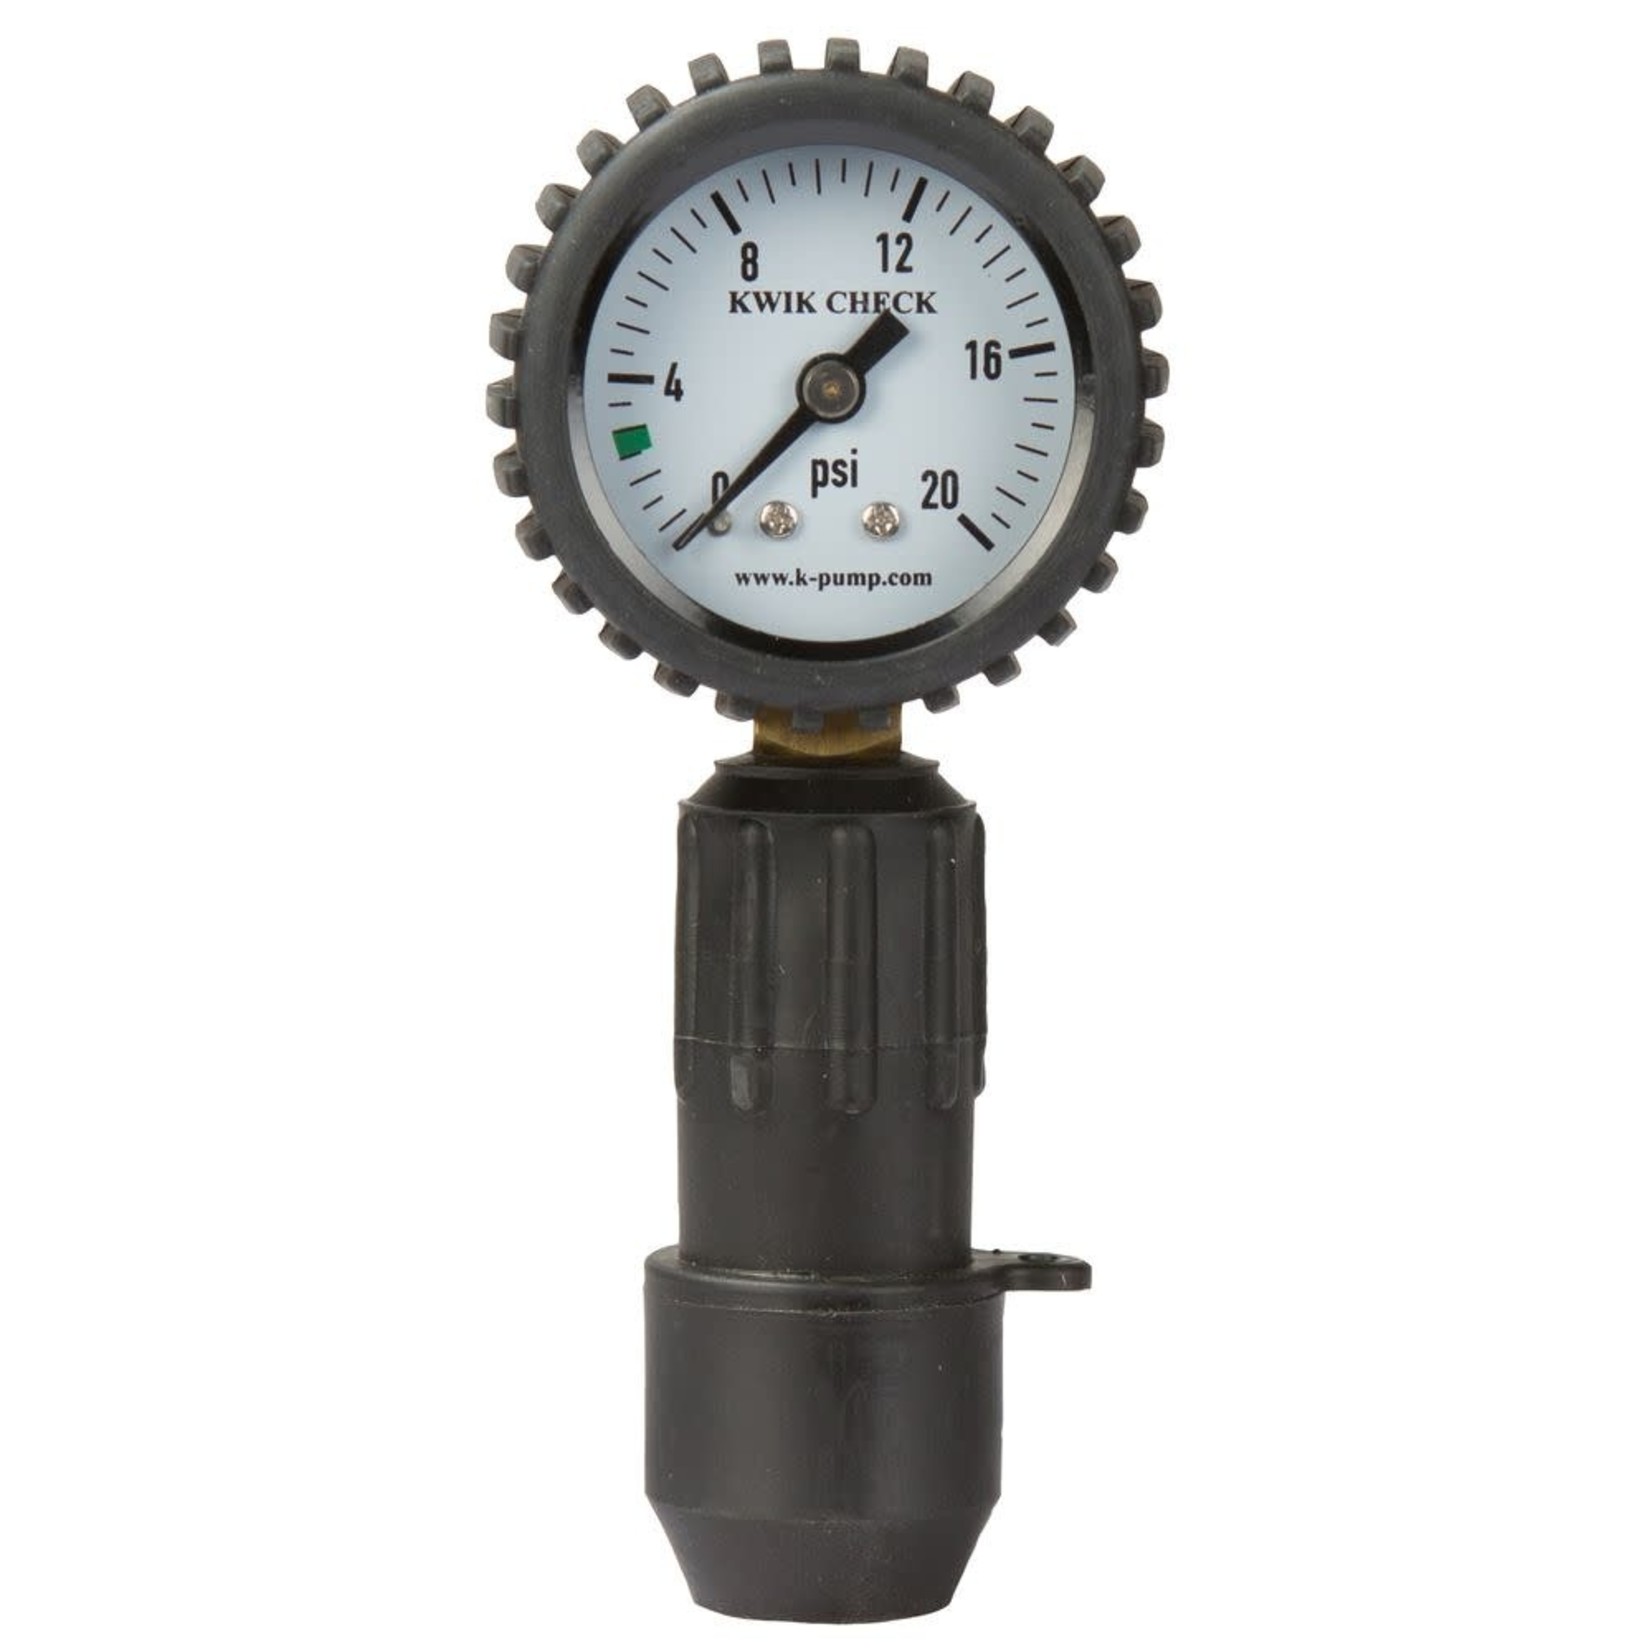 Kpump K-Pump Kwik Check Standard Pressure Gauge